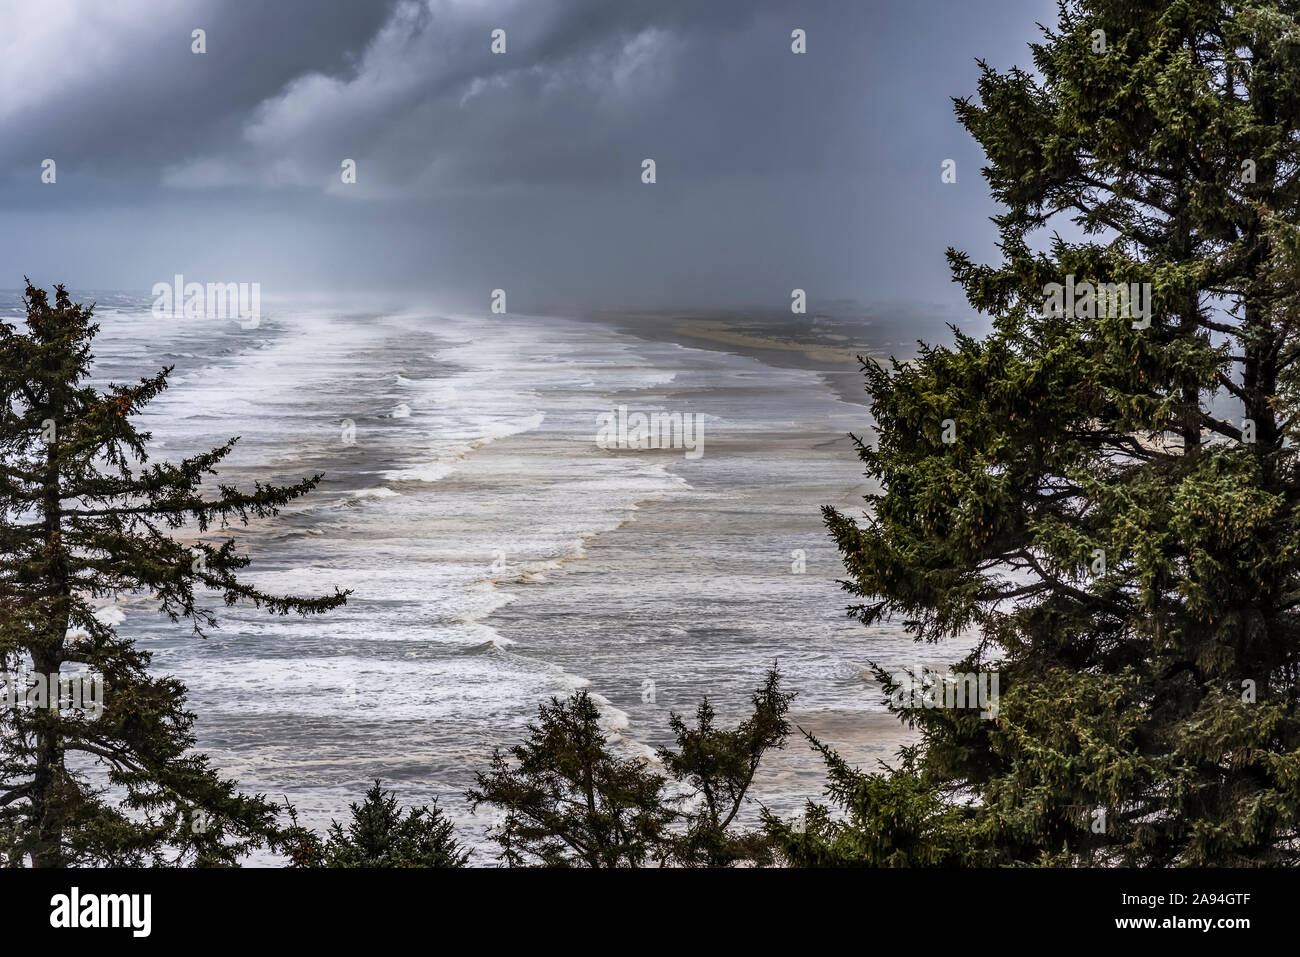 Una tempesta si muove sopra la penisola di Long Beach nel Cape Disappolation state Park di Washington; Ilwaco, Washington, Stati Uniti d'America Foto Stock